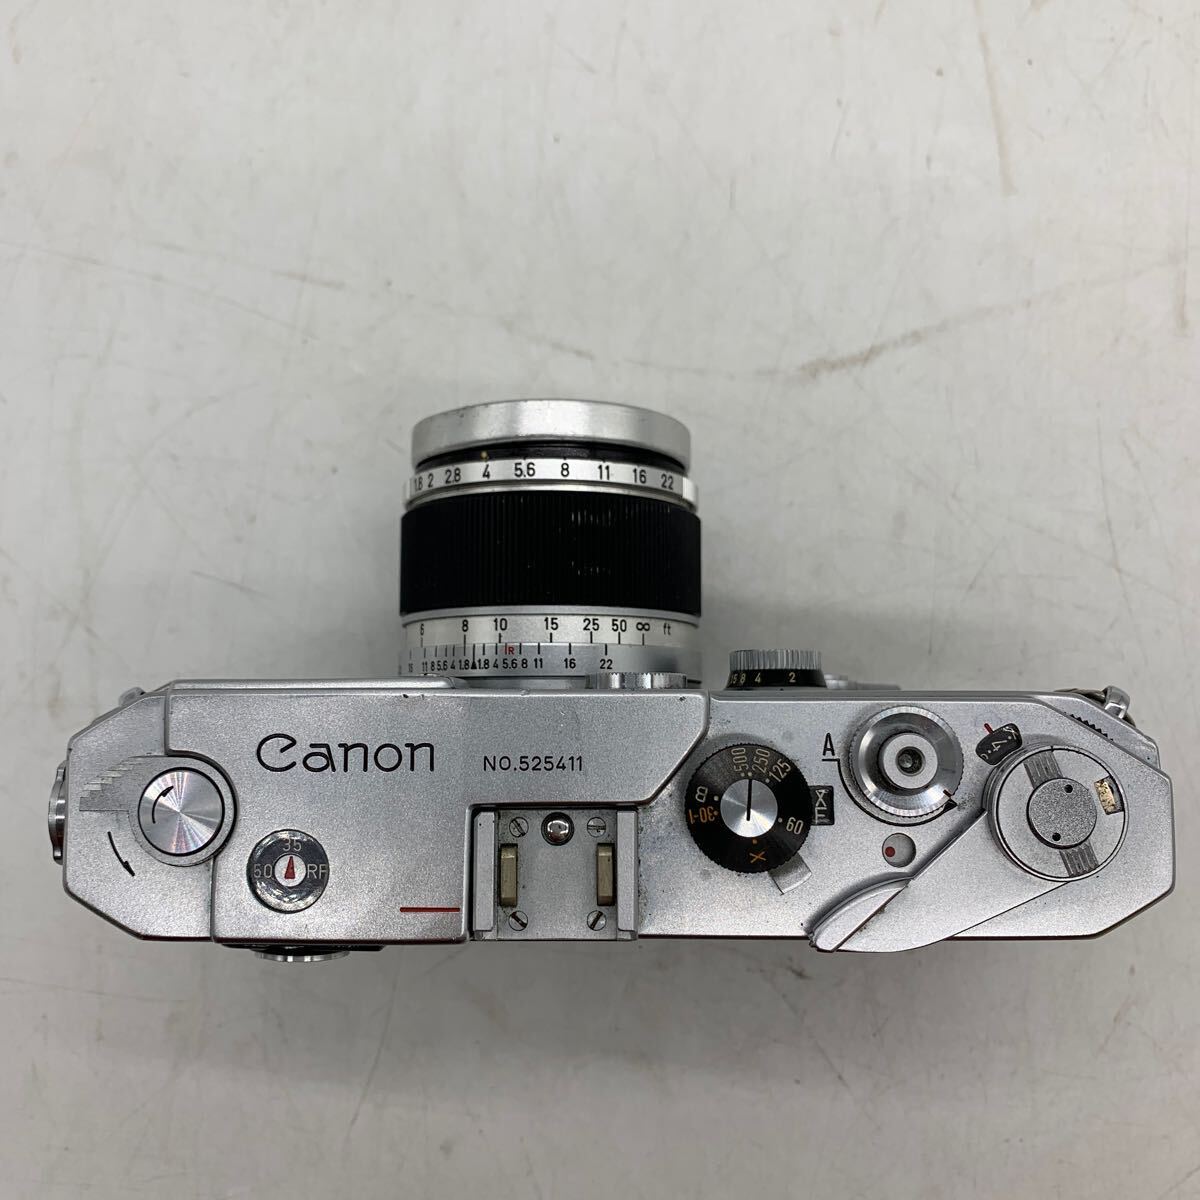 6-3-21■ Canon キャノン MODEL L2 レンズ付 LENS 50mm F1.8 レンジファインダー フィルムカメラ ジャンク シャッター未確認 現状品渡の画像2